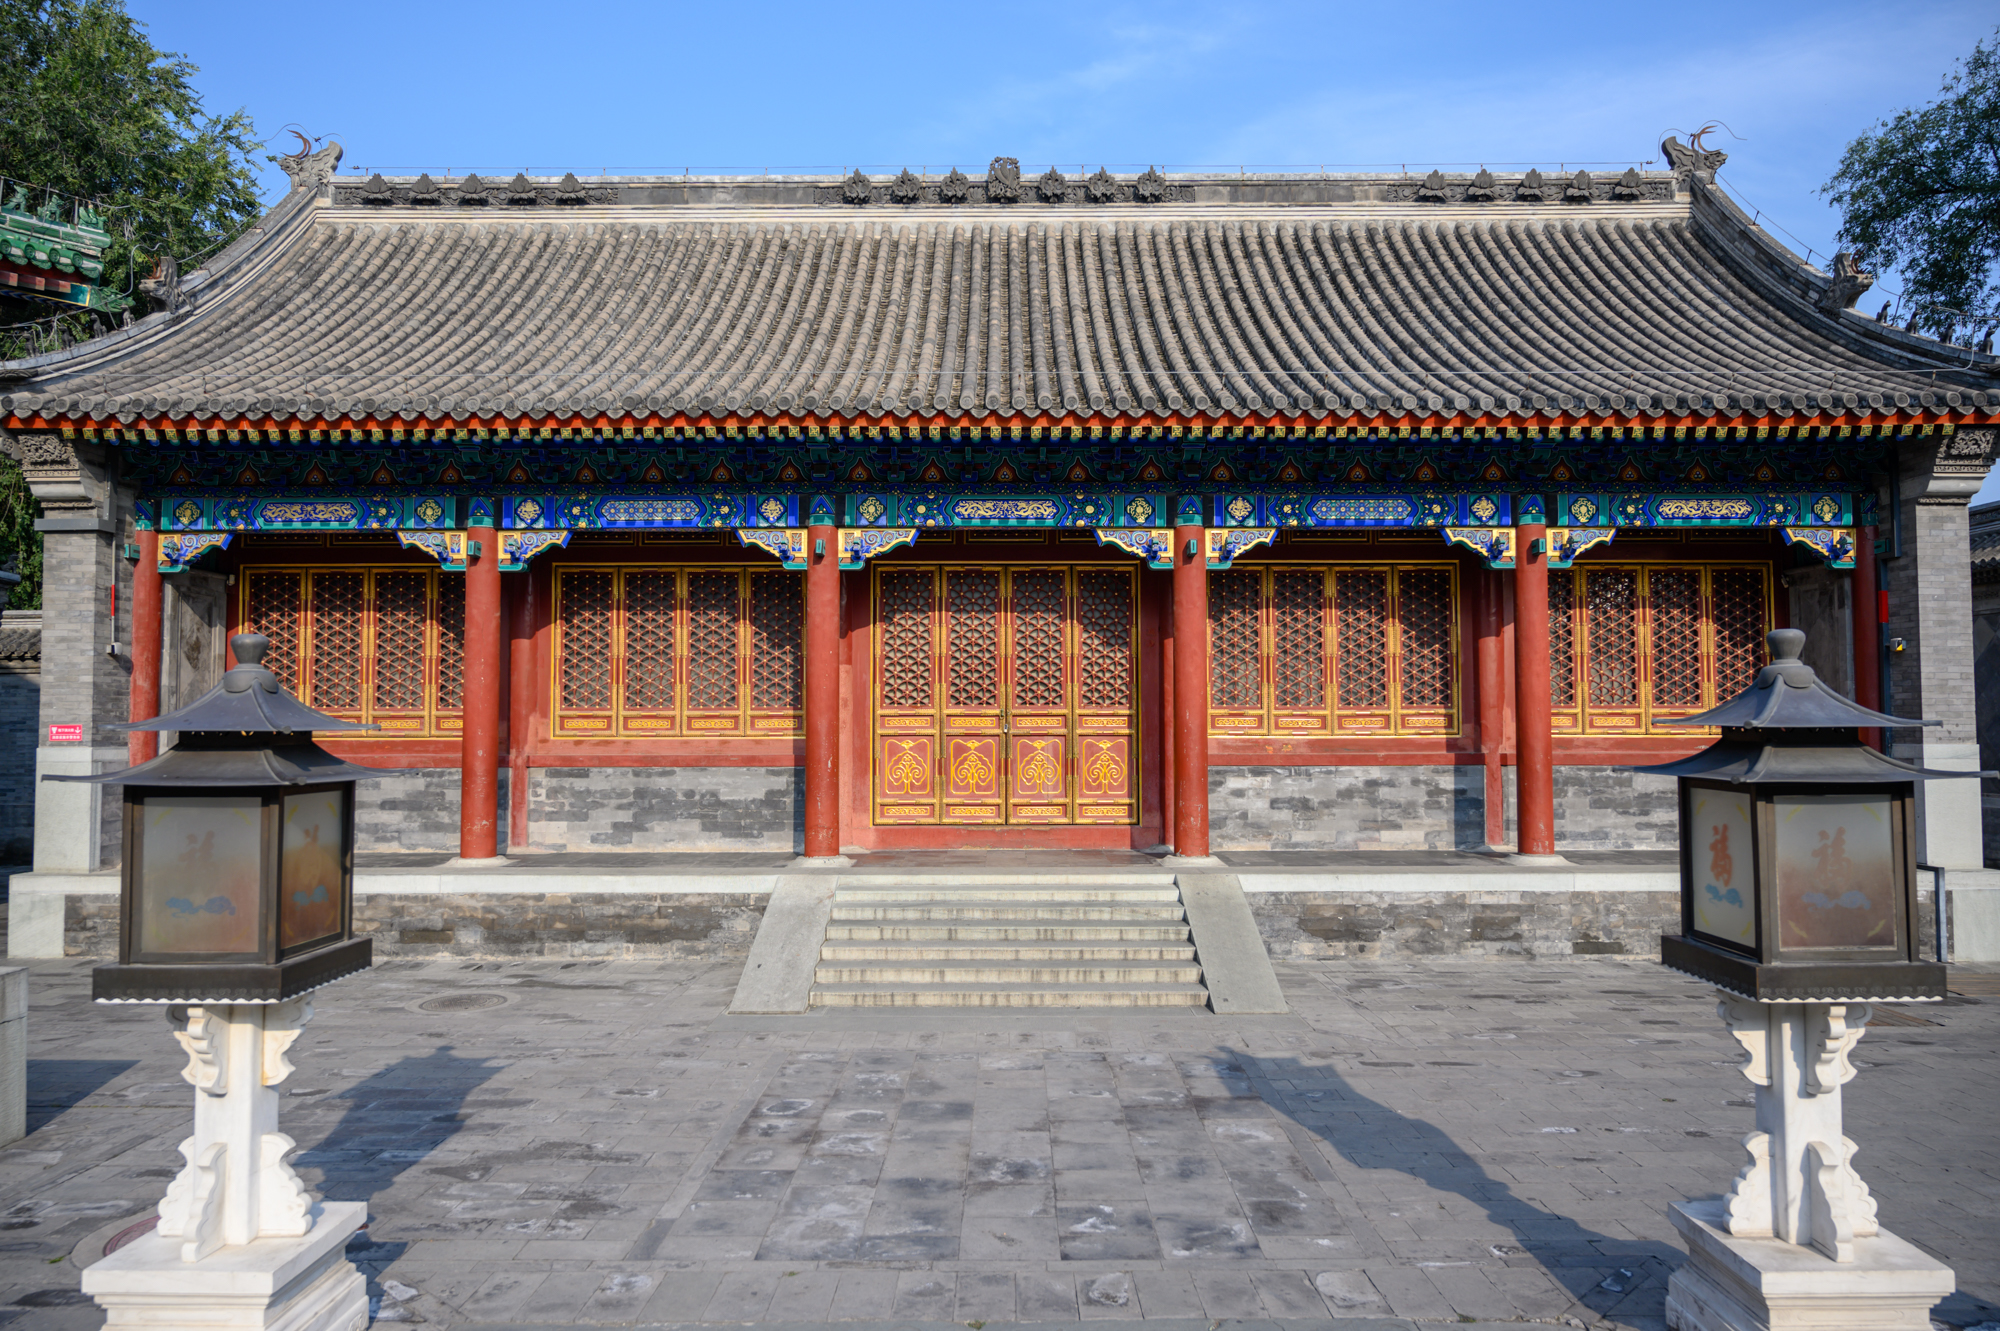 中国唯一对外开放的清代王府,京城第一佳山水,建筑规格堪比皇宫